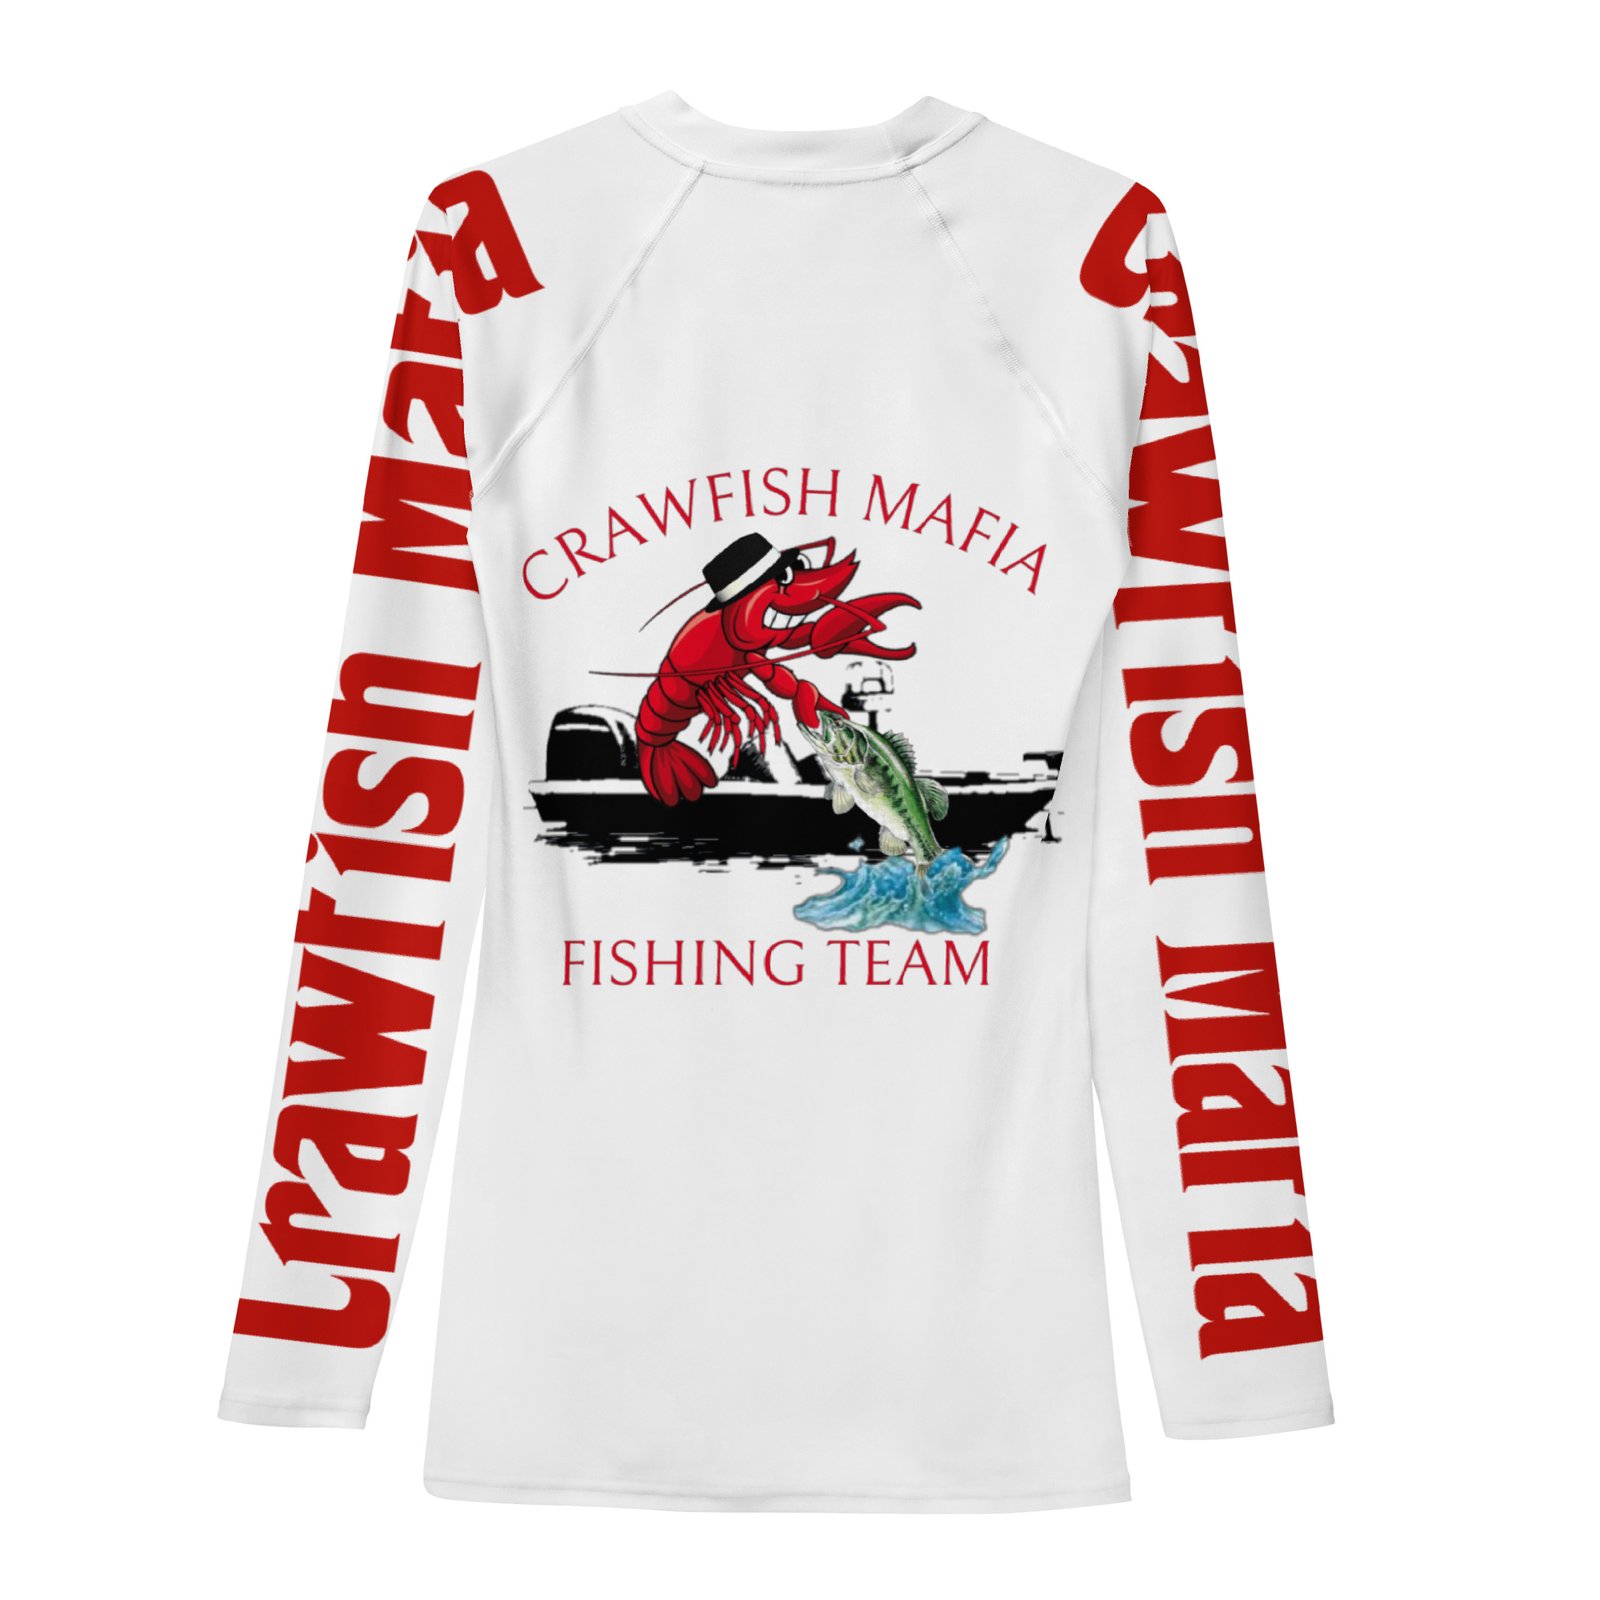 Crawfish Mafia Fishing Team Men's Rash Guard